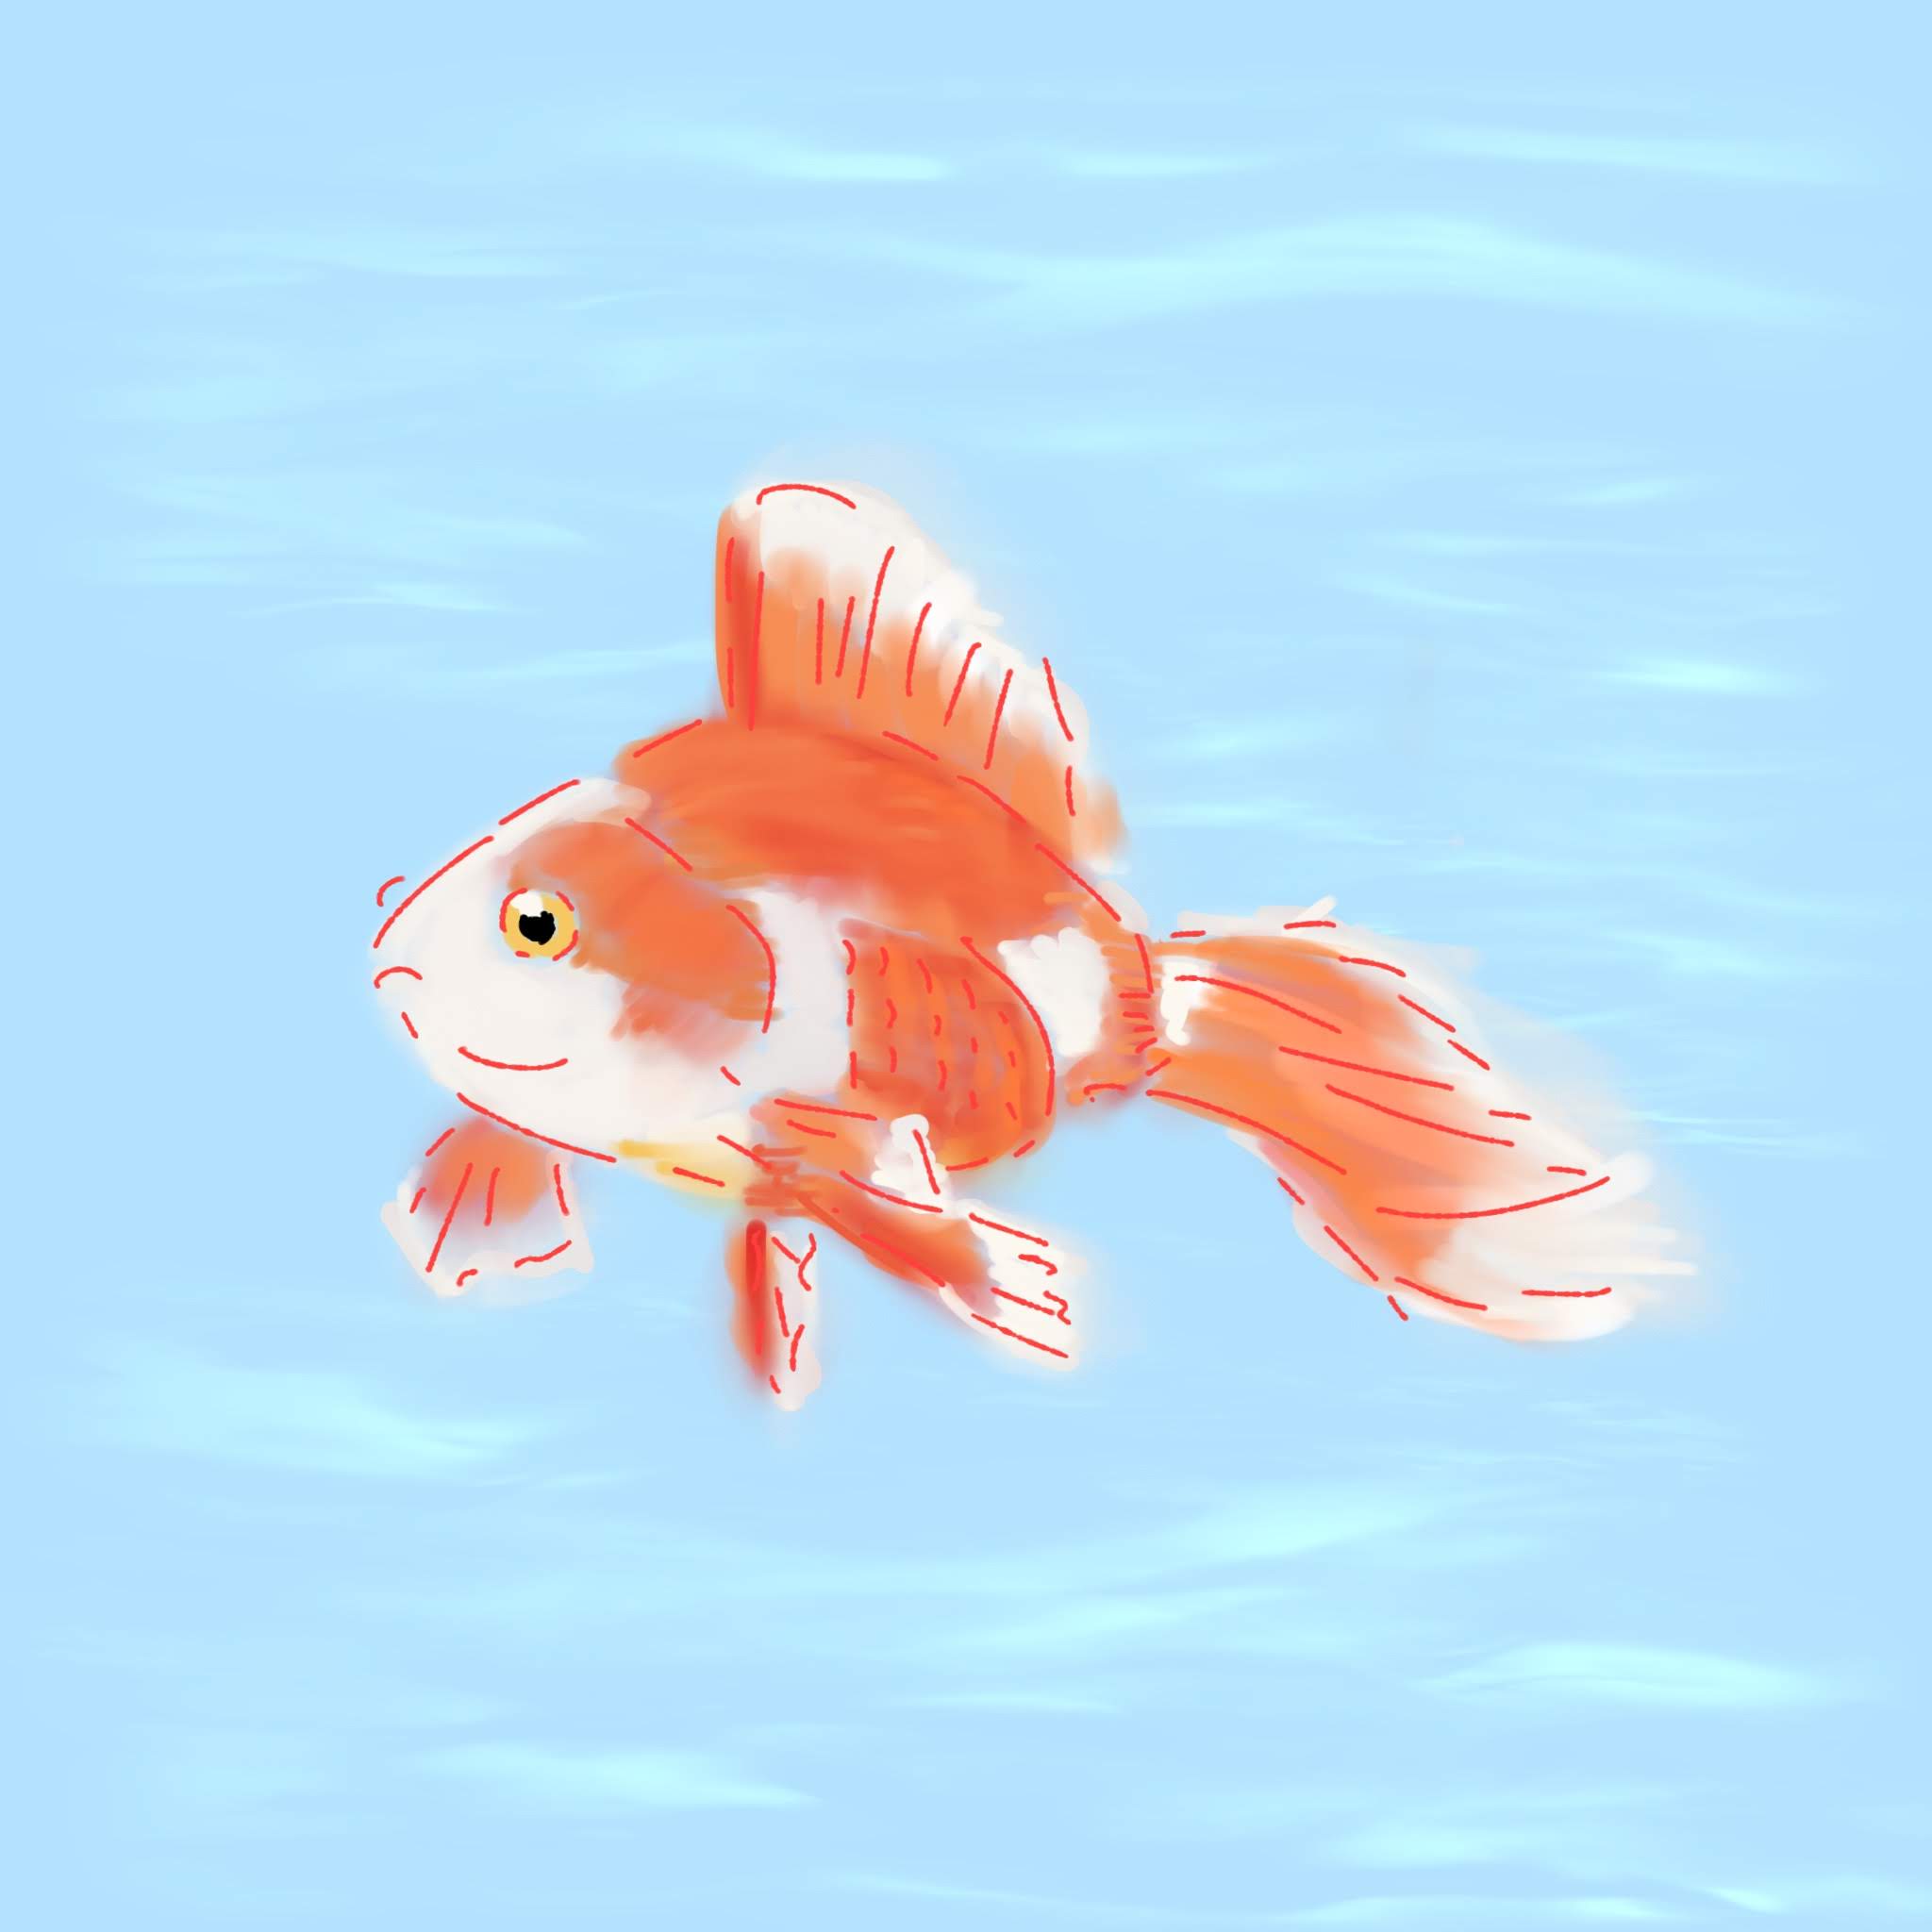 iPad Pro Work#32 ゆらゆら泳ぐ金魚